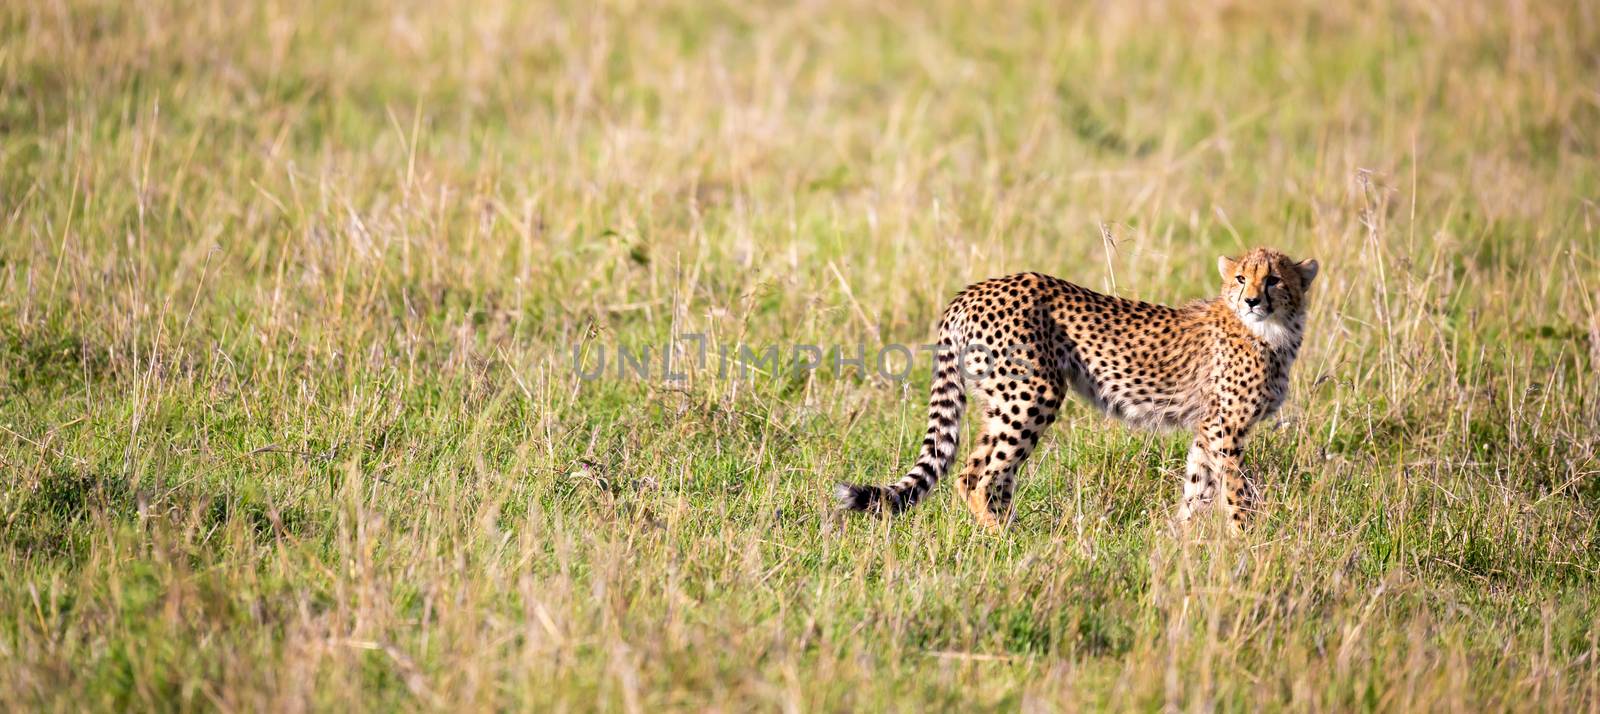 A cheetah walks between grass and bushes in the savannah of Kenya